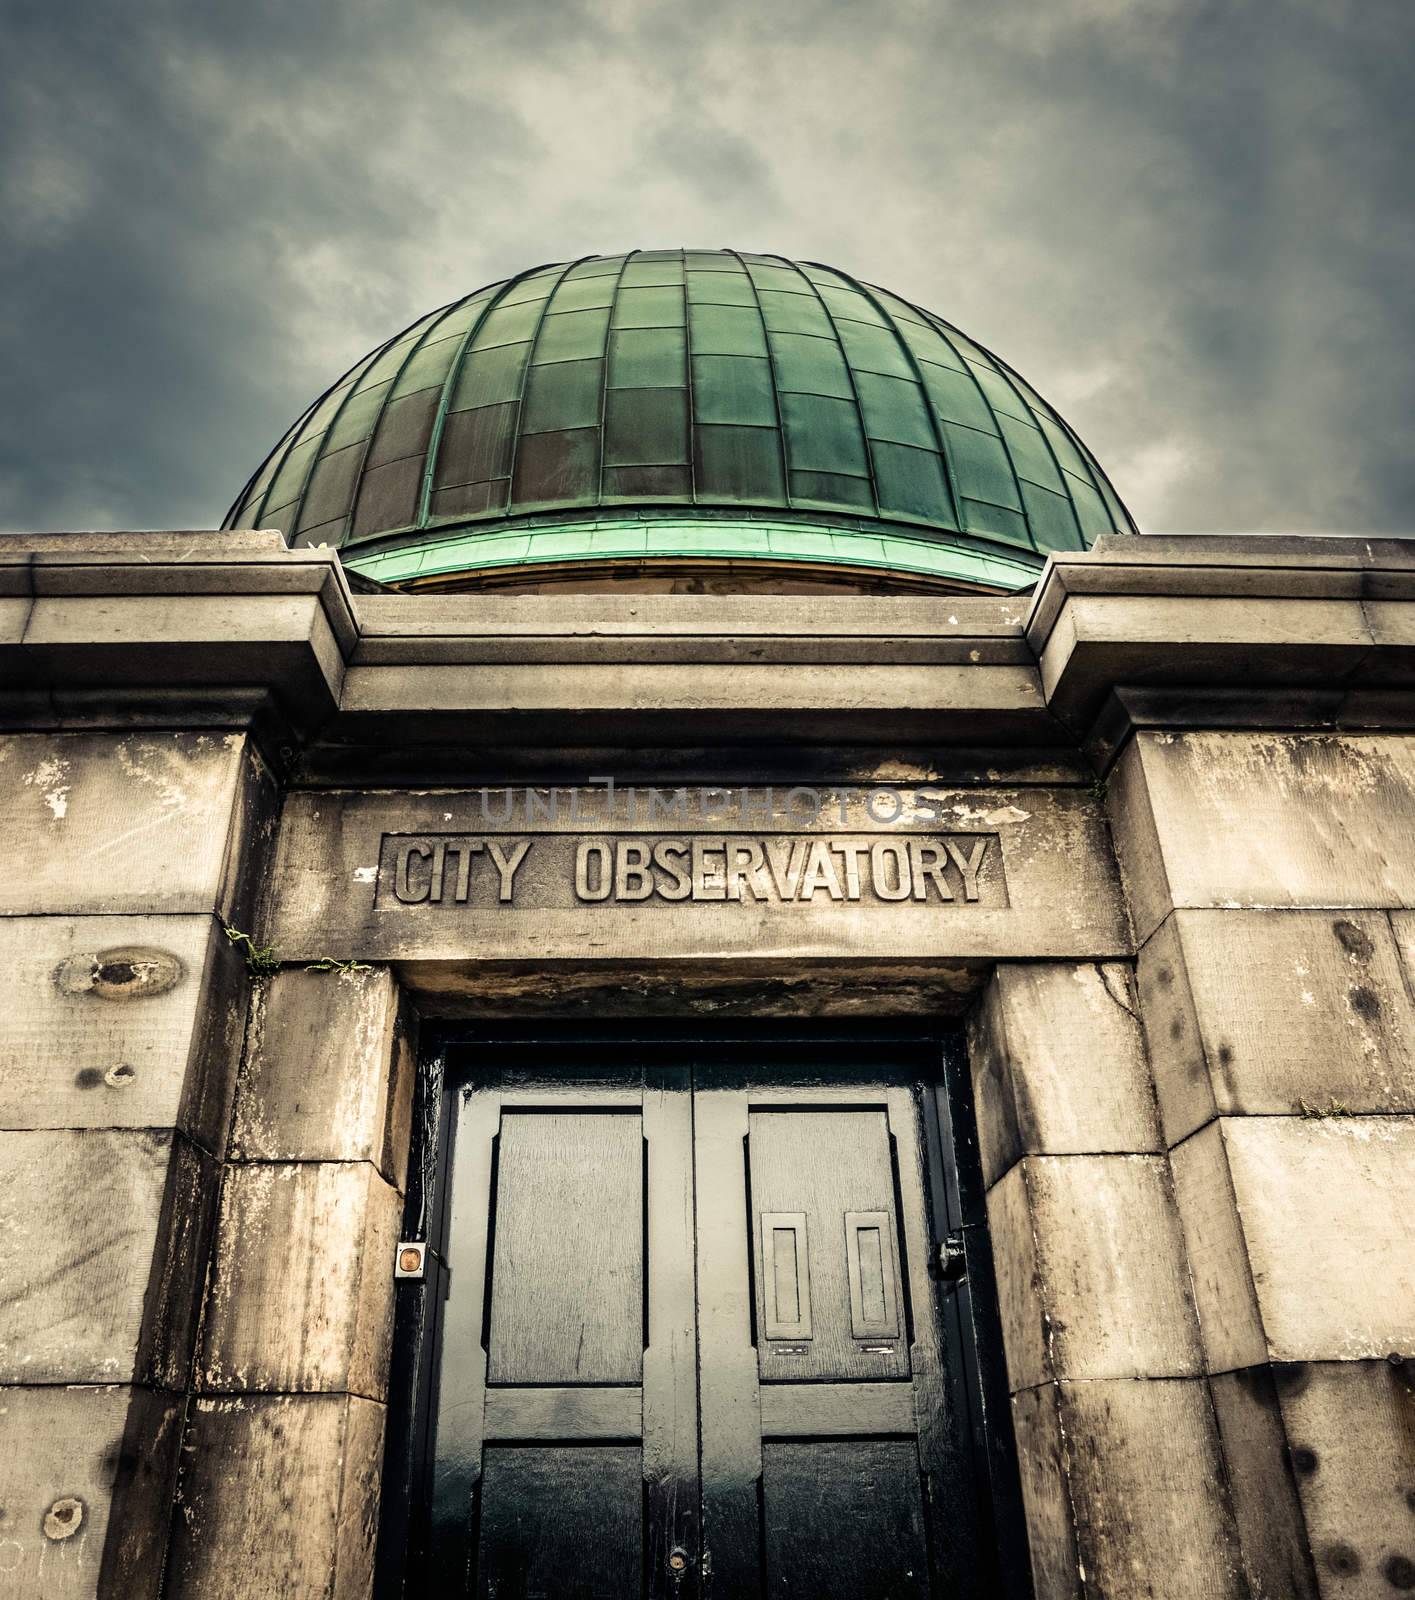 Vintage Style Edinburgh Observatory by mrdoomits